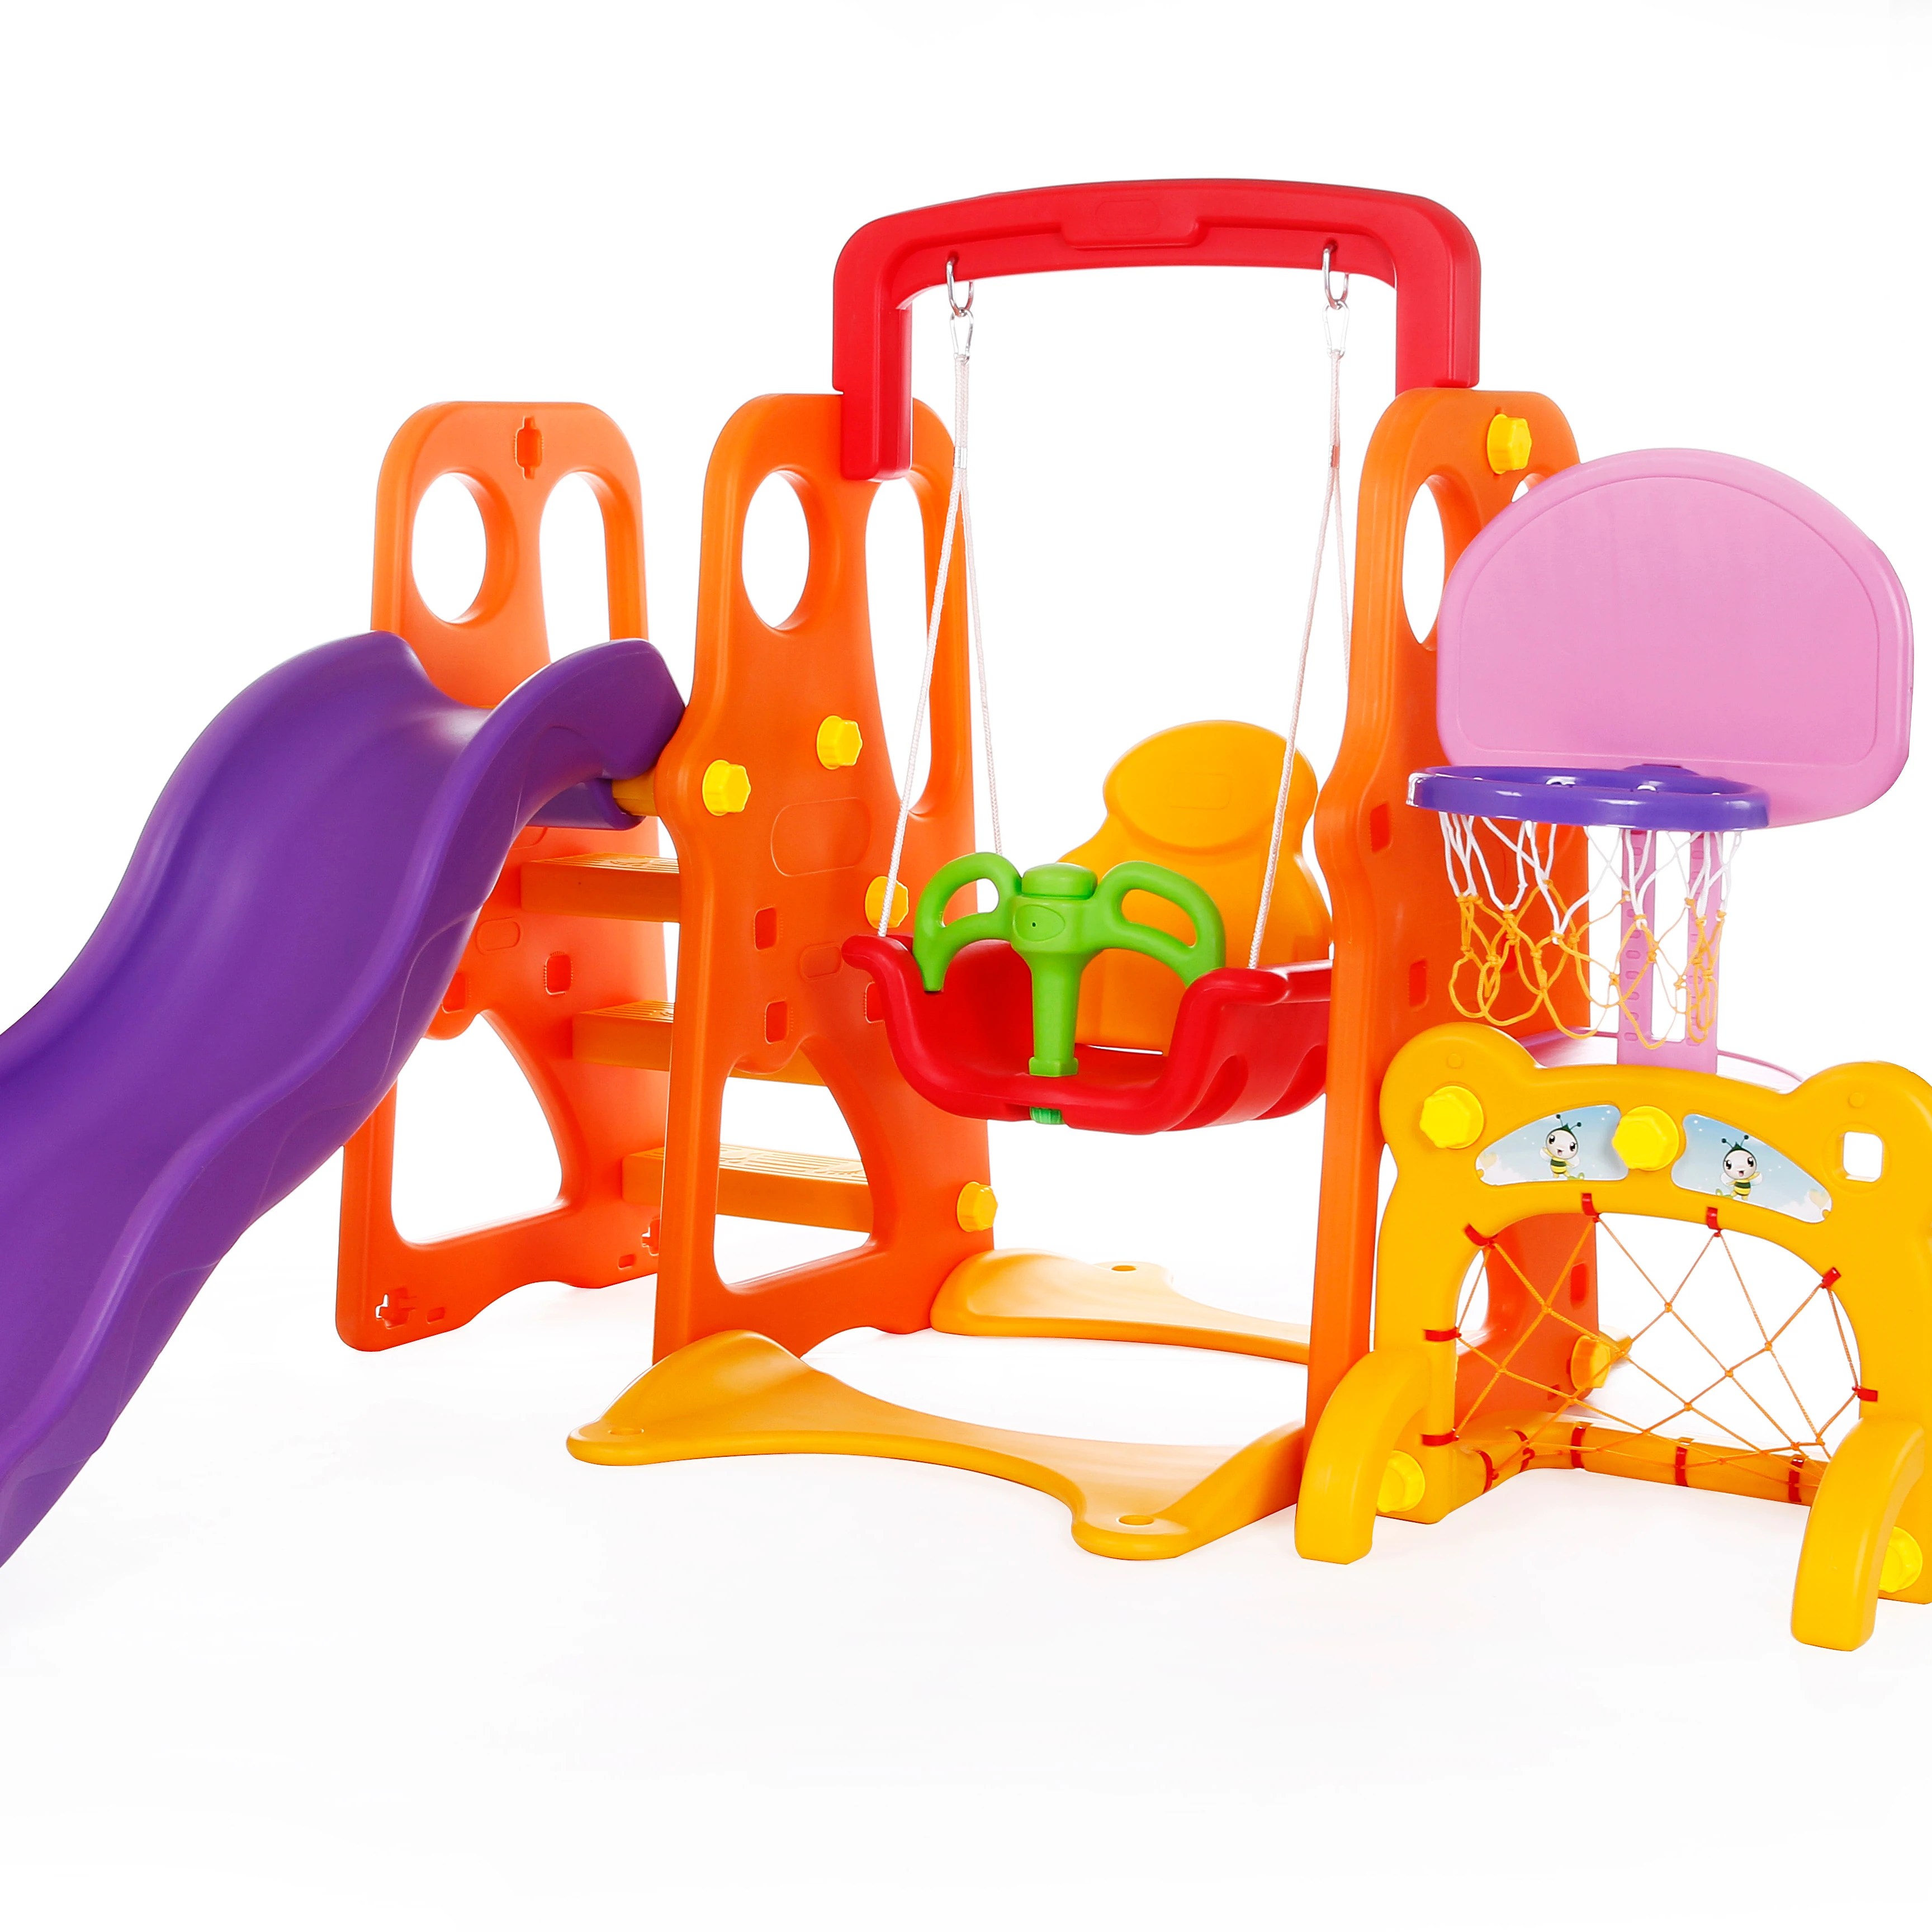 

Kindergarten Children indoor combination plastic slide and swing children slide adventure amusement soft indoor playground